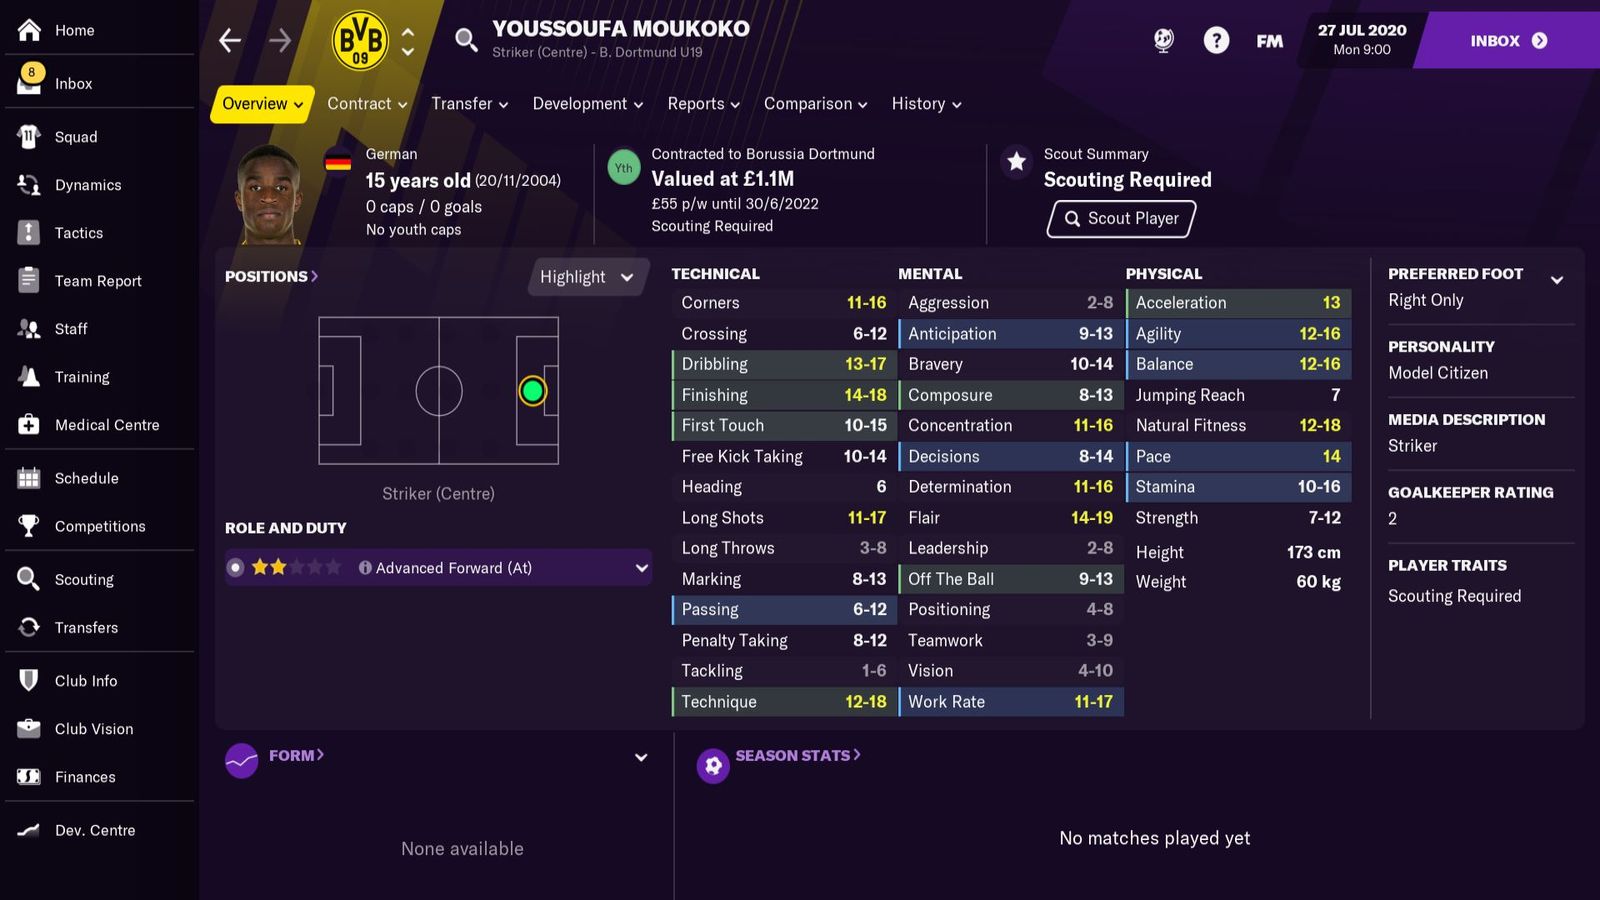 WONDERKID - There's nobody better than Moukoko